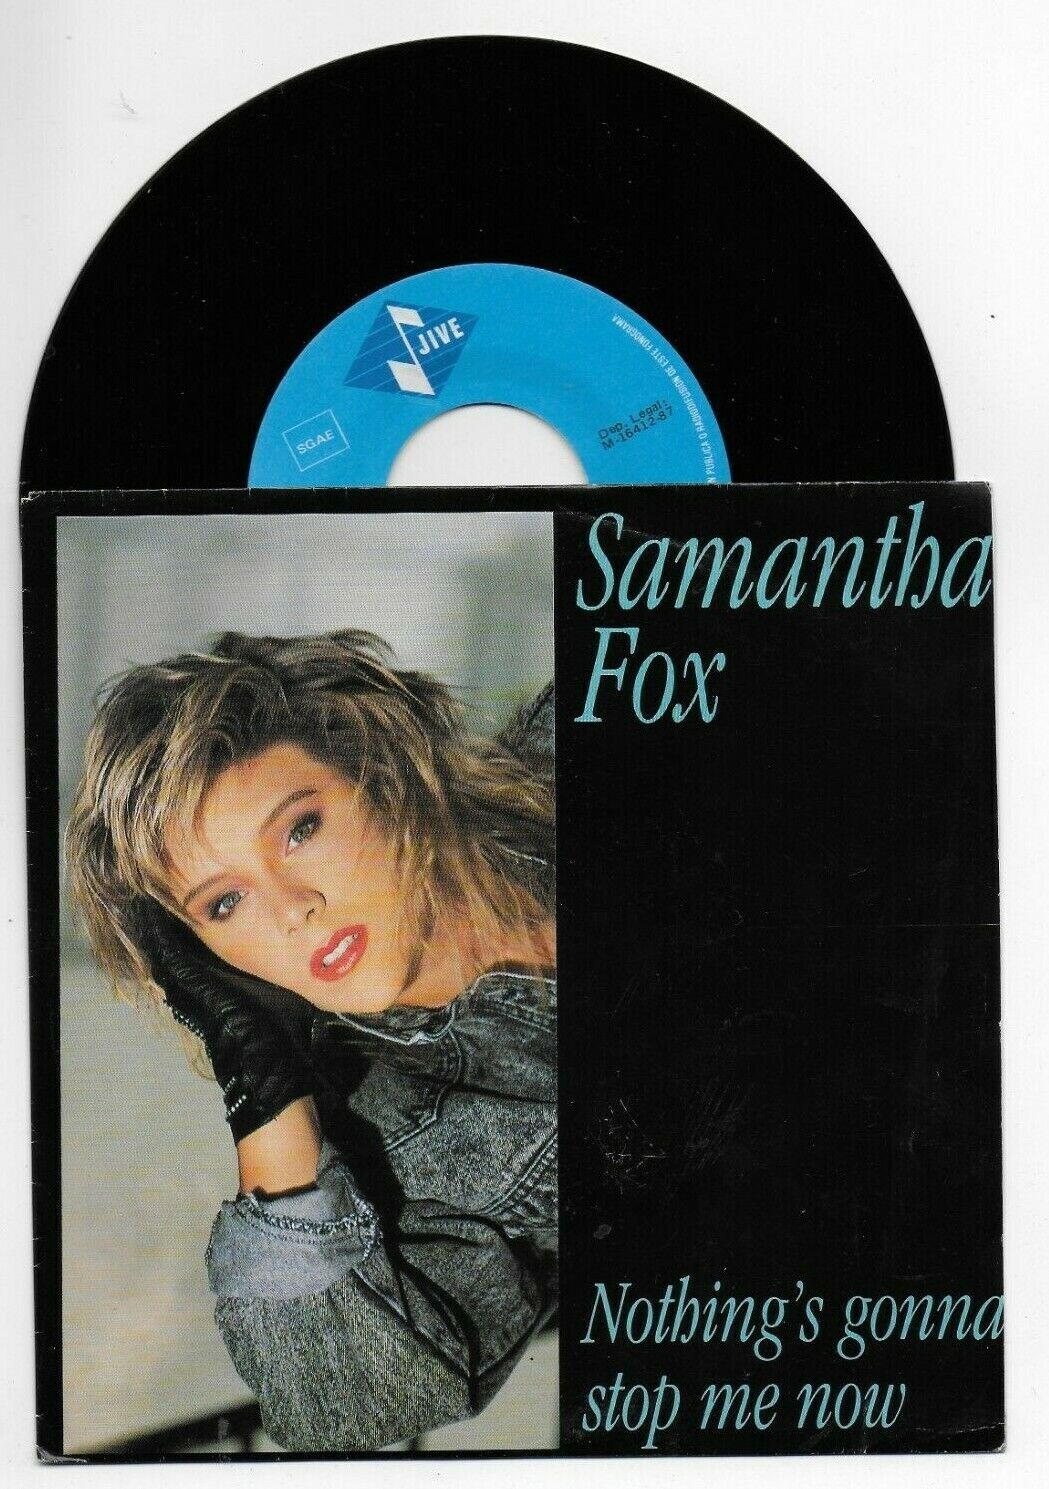 Fox samantha now is where Samantha Fox